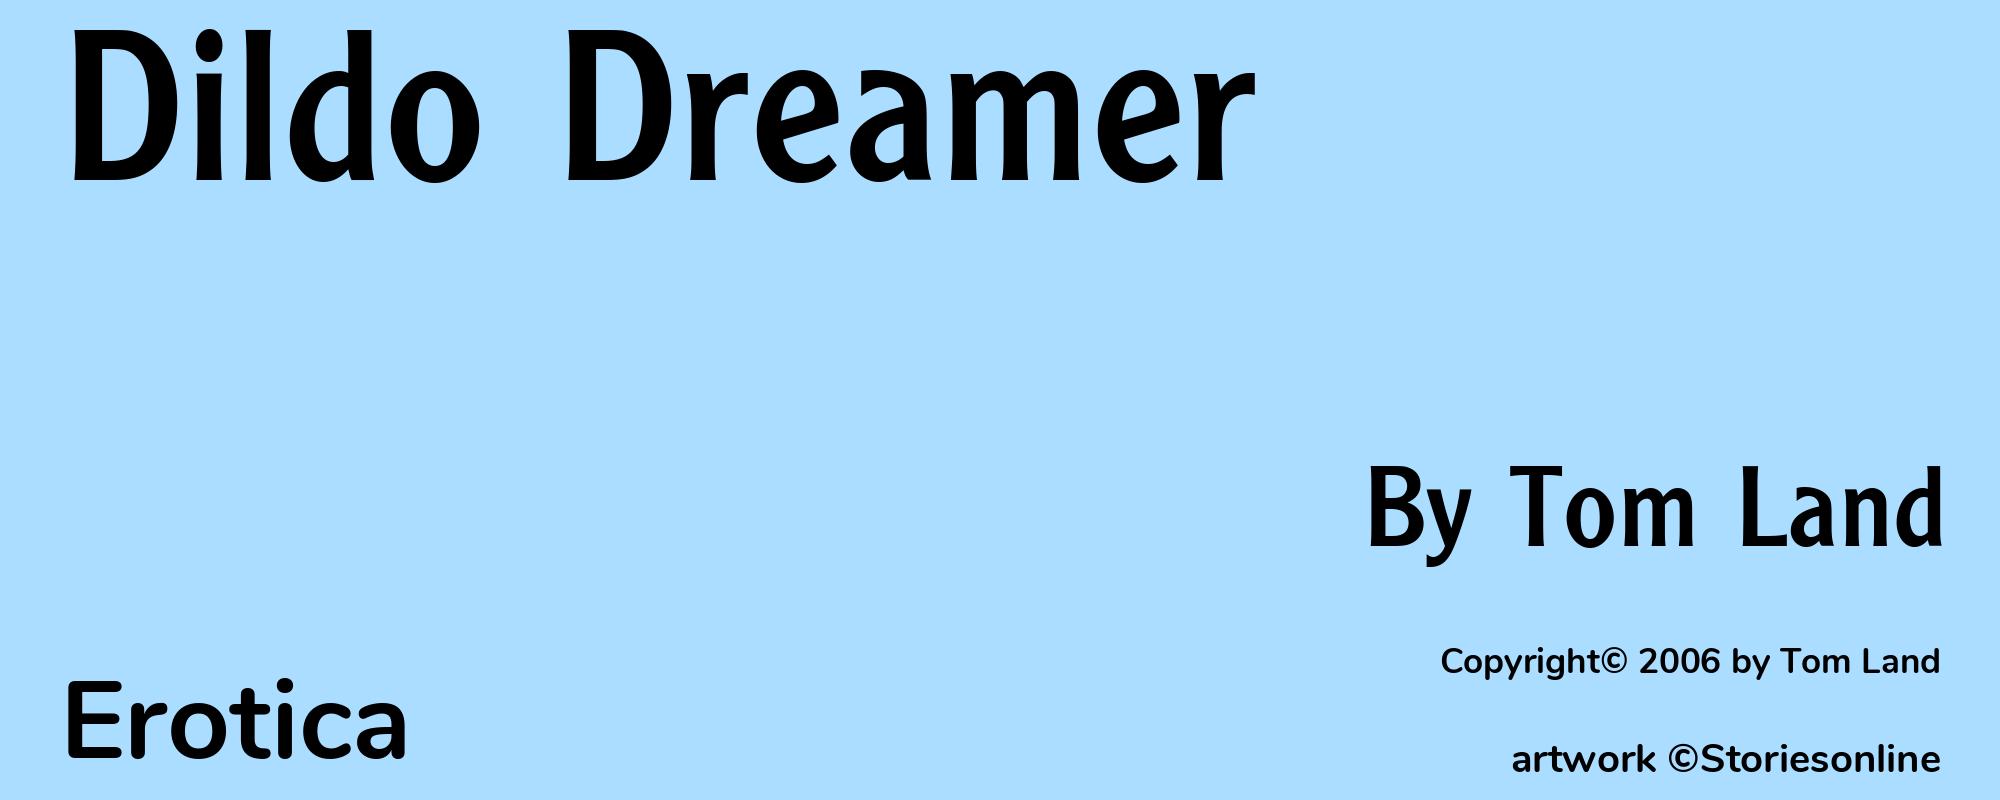 Dildo Dreamer - Cover